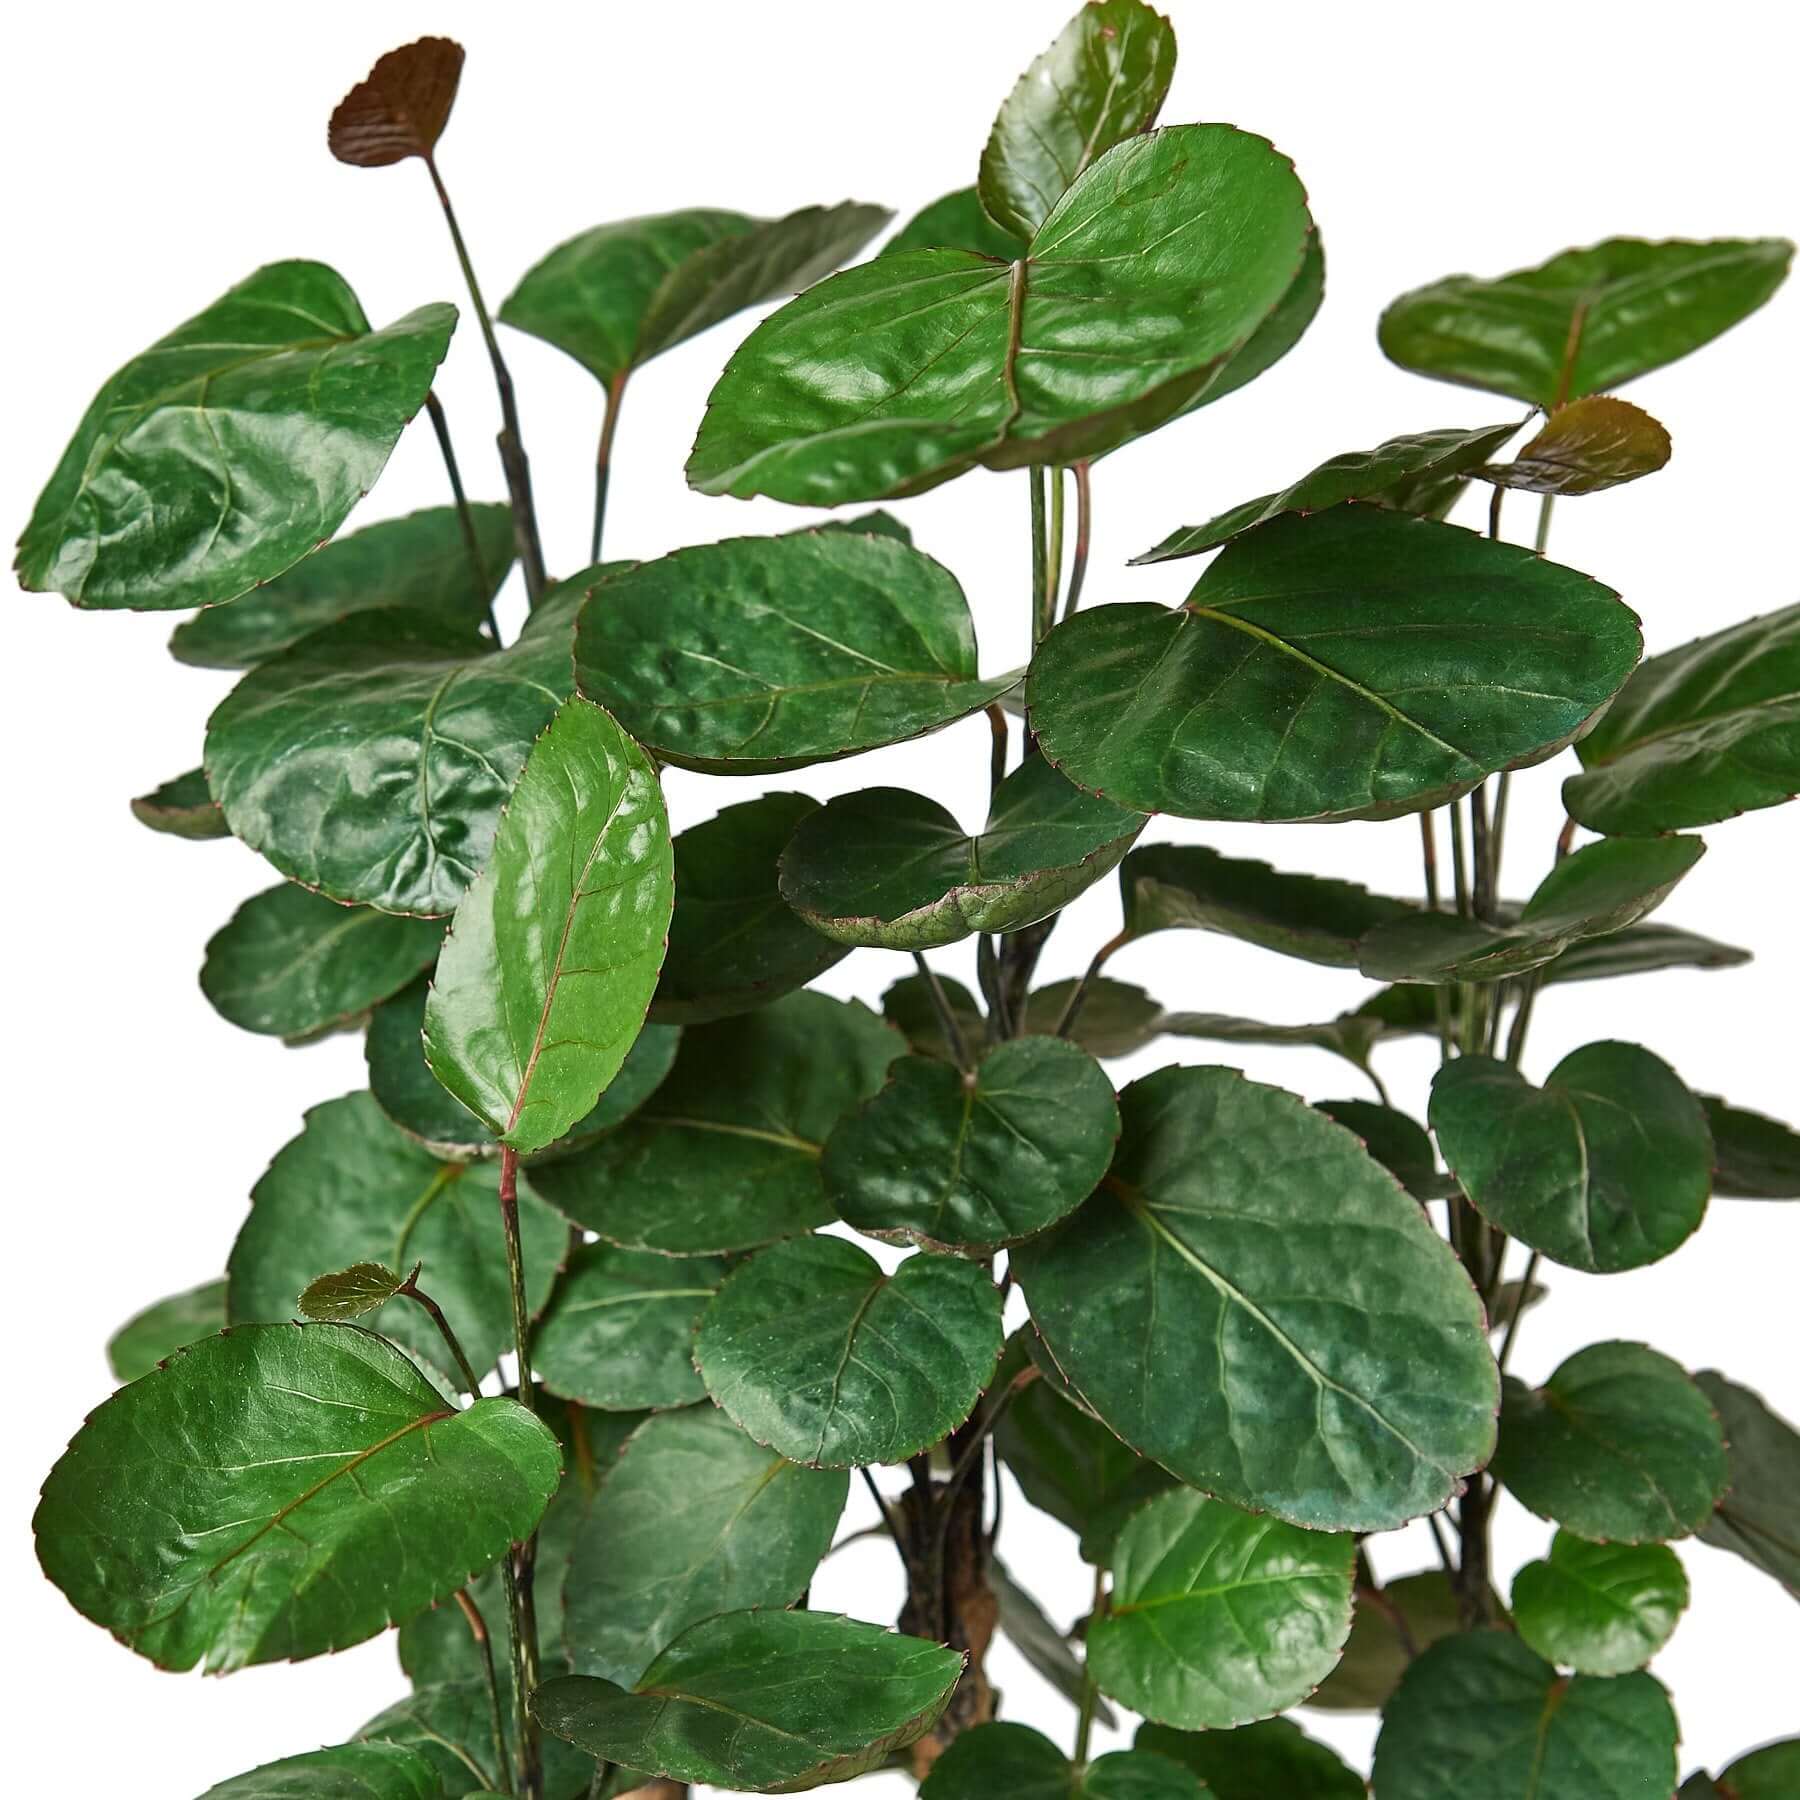 Polyscias Scutellaria - Aralia Fabian Stump | Modern house plants that clean the air